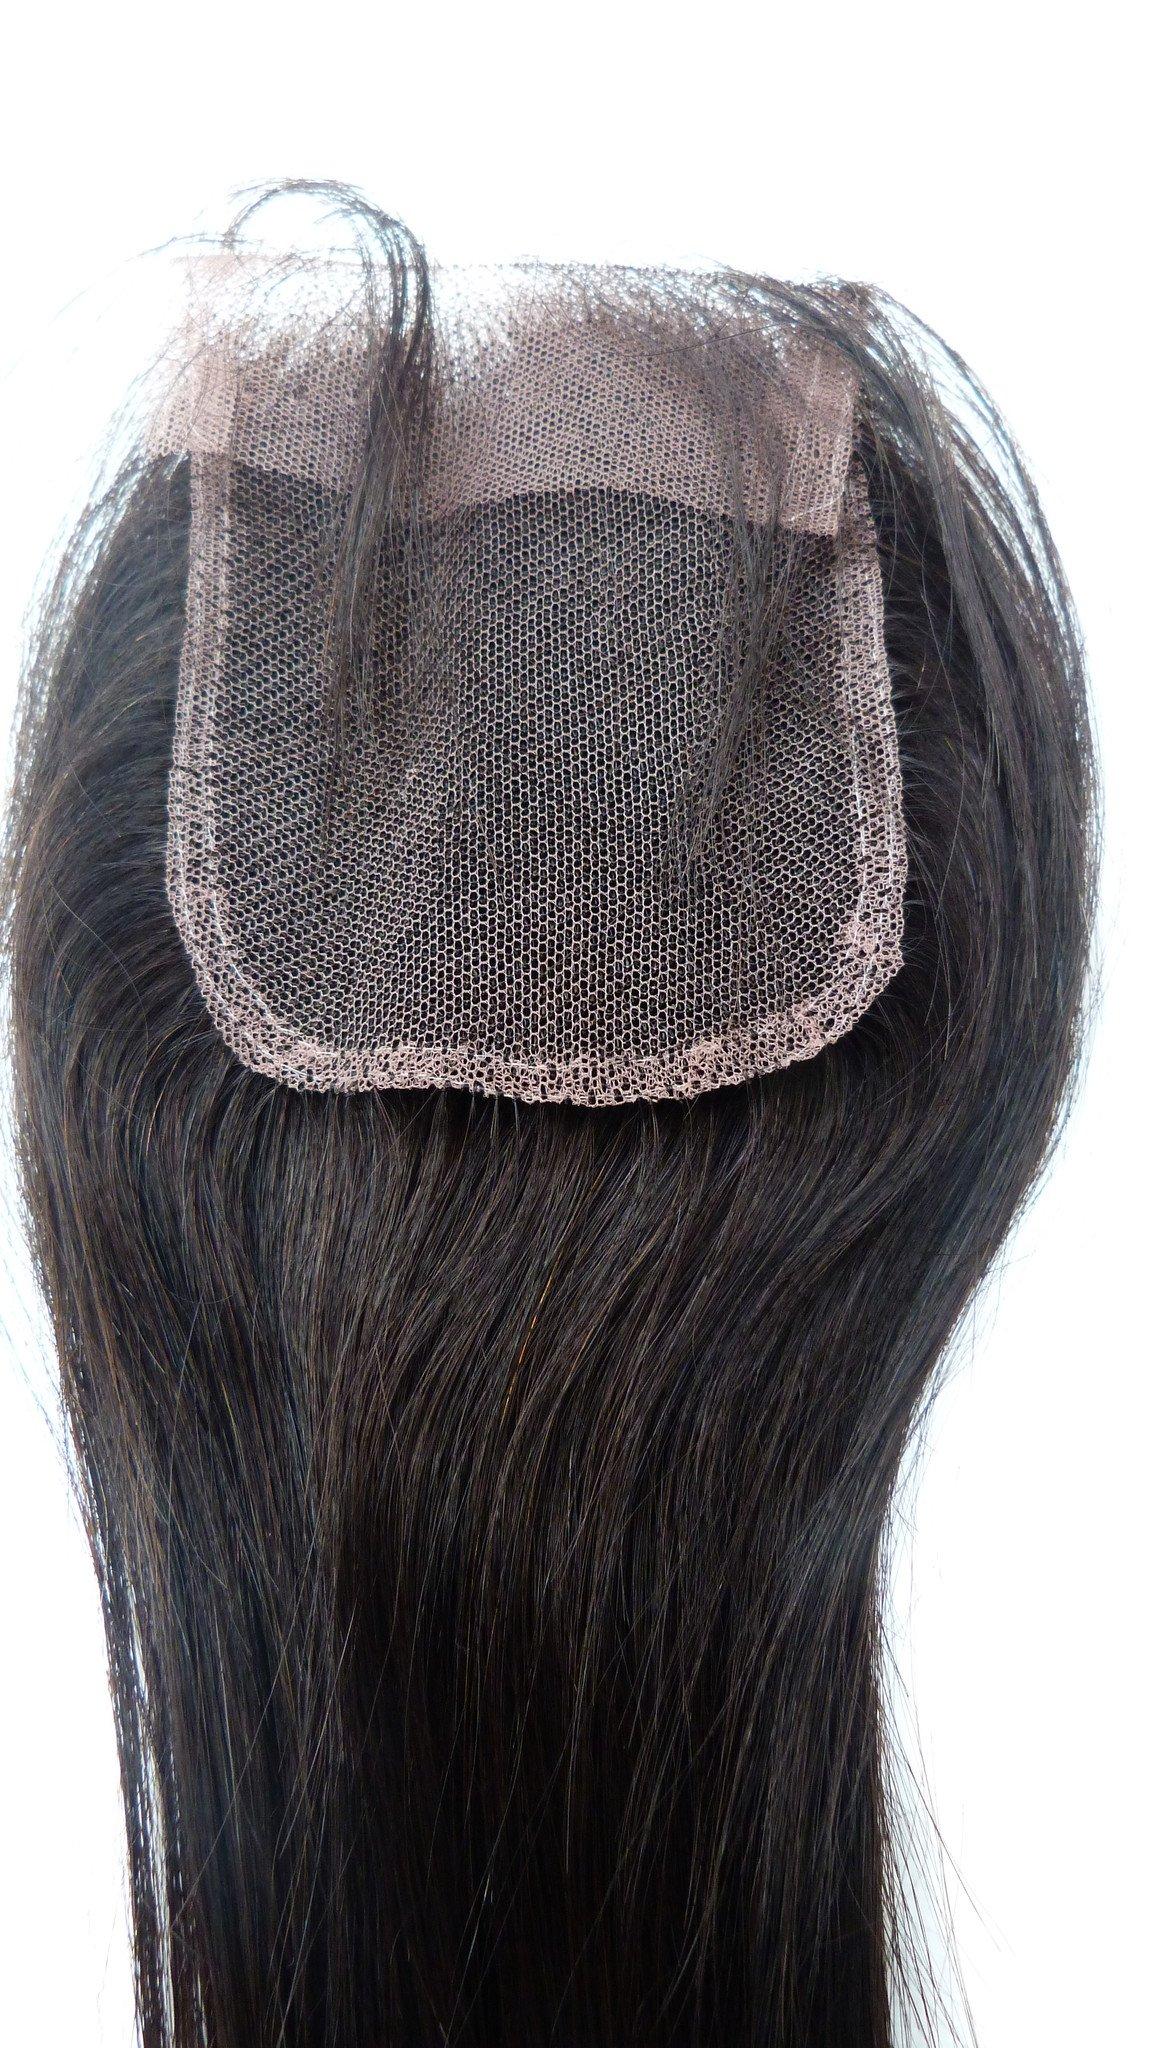 סגירת תחרה של רמי בתולה הודית - 3.5"x4"-שיער ויופי בתולה, תוספות השיער הטובות ביותר, שיער אנושי בתולה אמיתי.